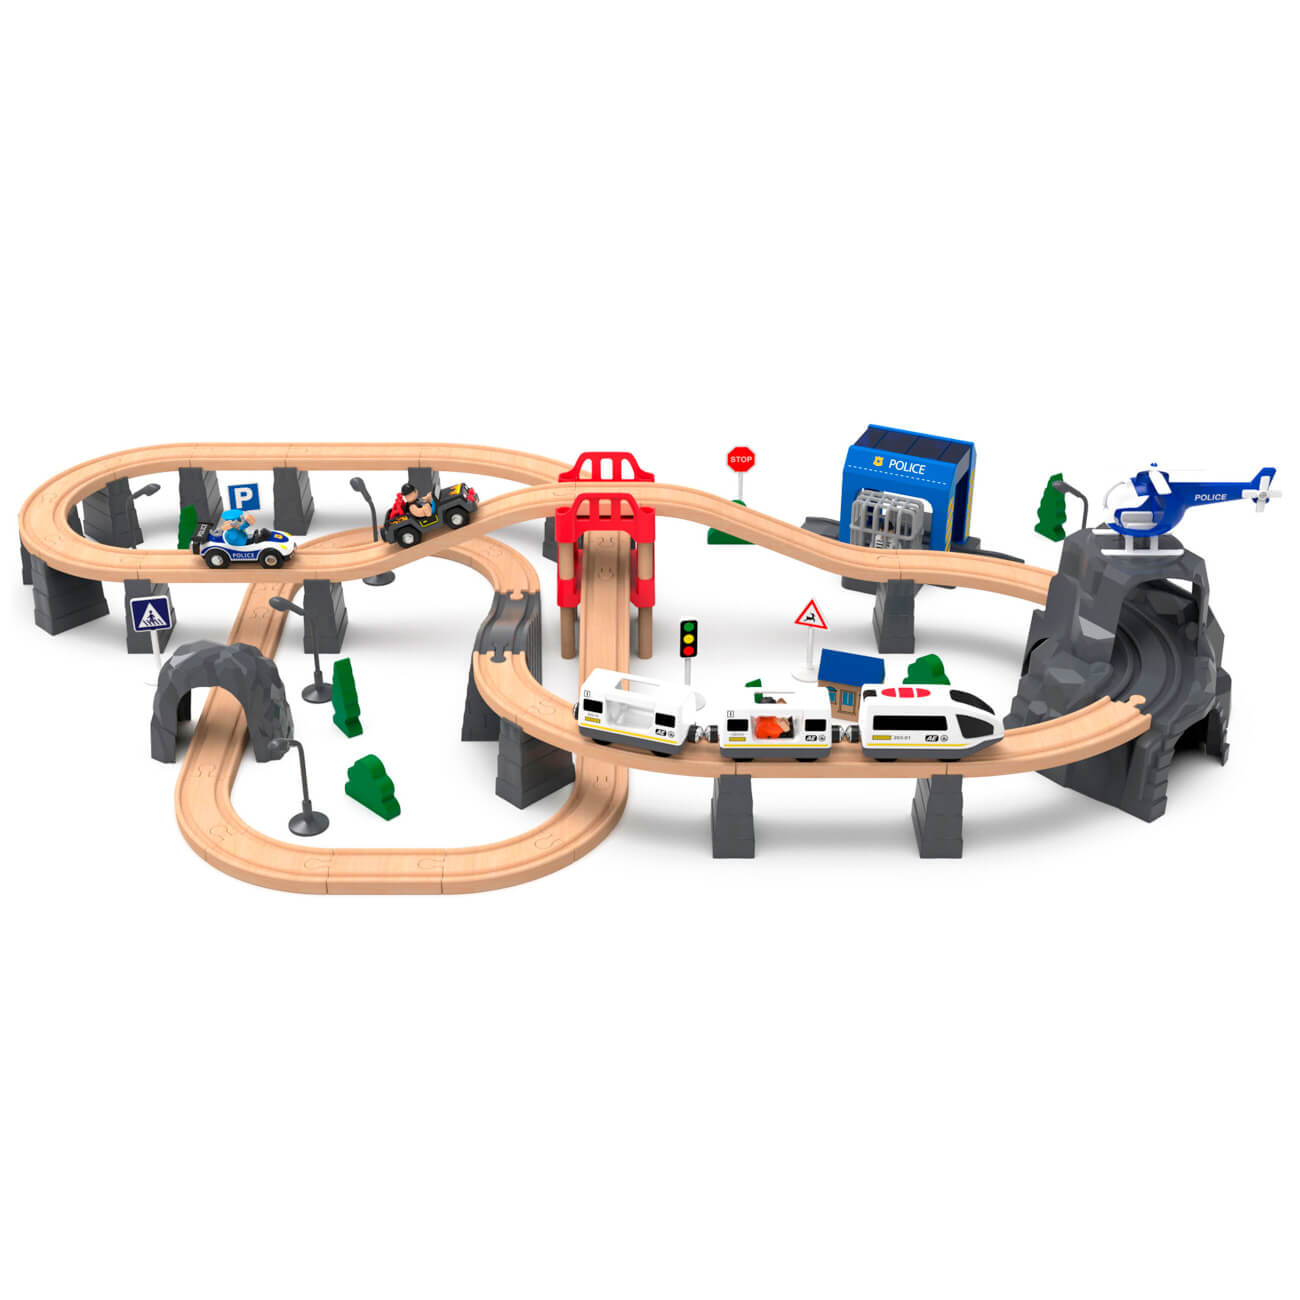 Железная дорога игрушечная, 98 см, дерево/пластик, Электропоезд, Game rail дорога на аннапурну с автографом